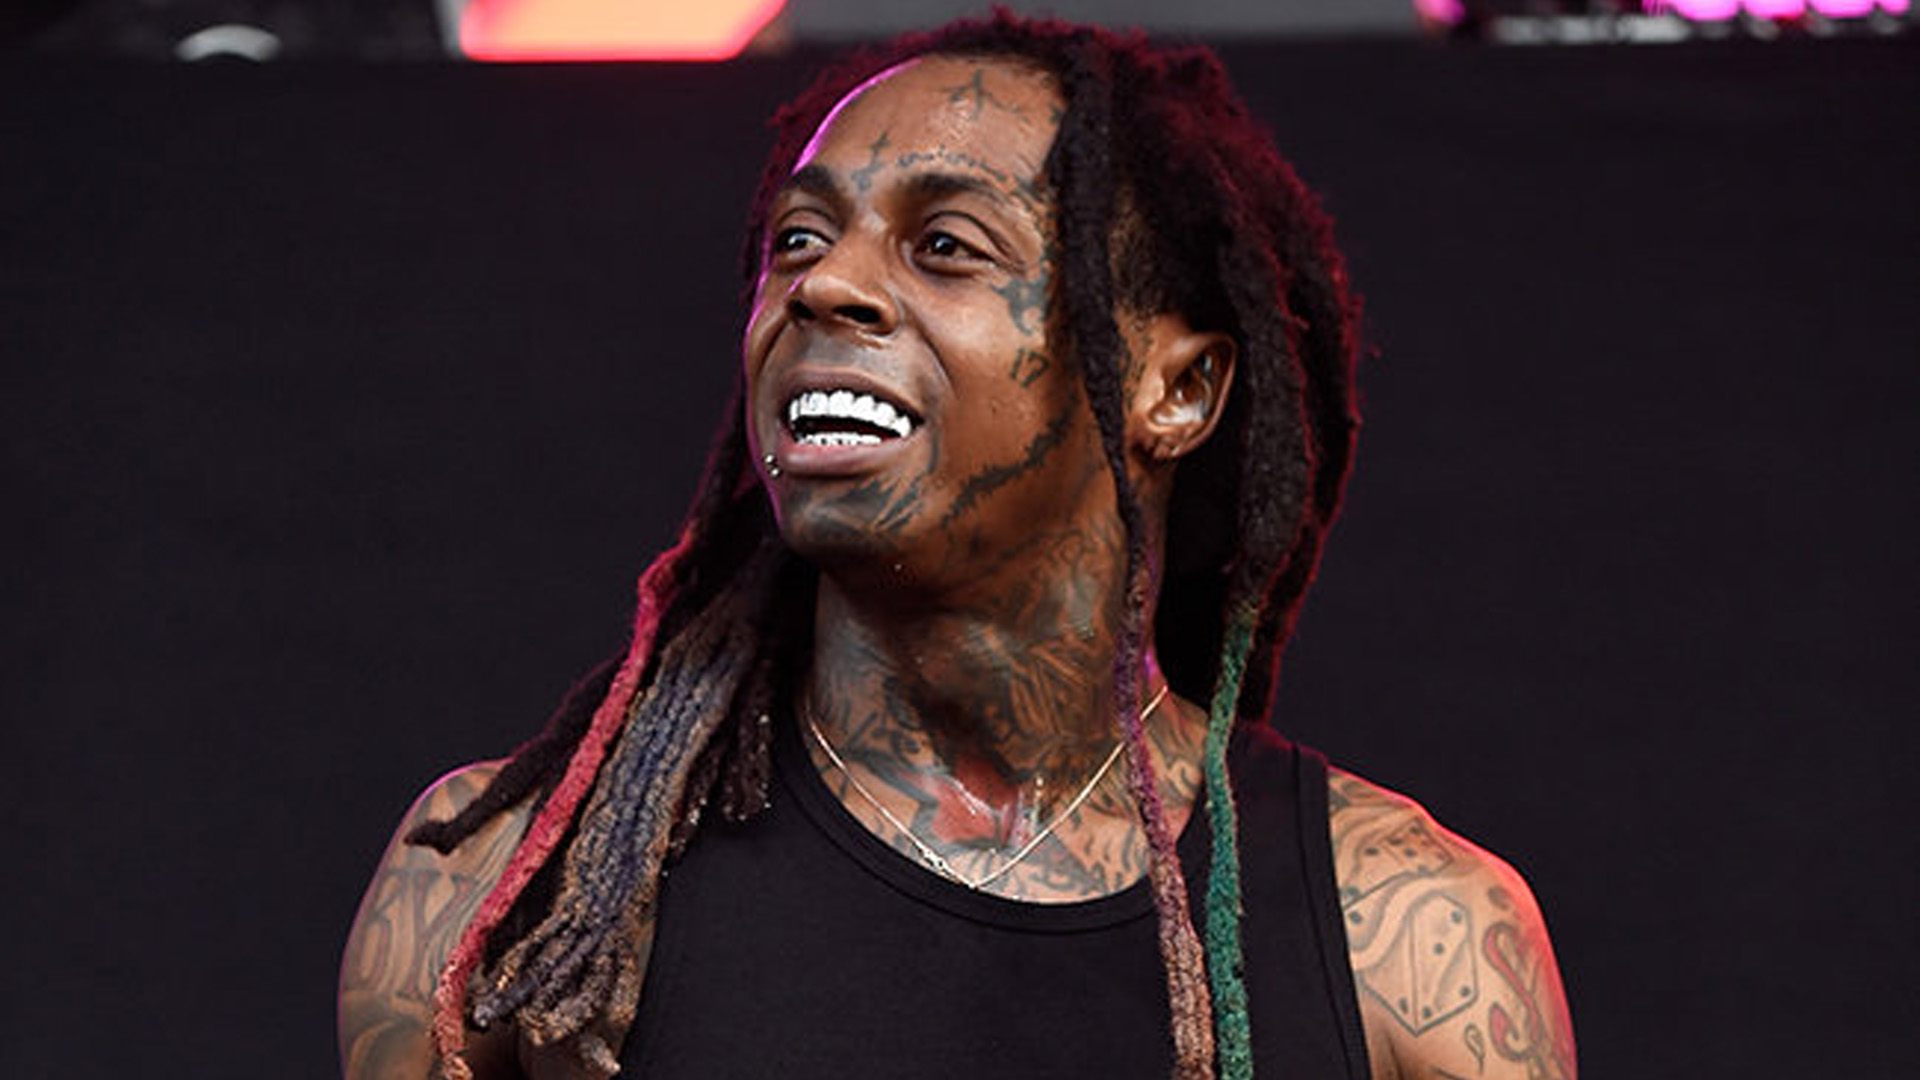 Lil Wayne lanza su disco ‘The Carter V’ con colaboraciones de Travis Scott y Nicki Minaj. Cusica Plus.